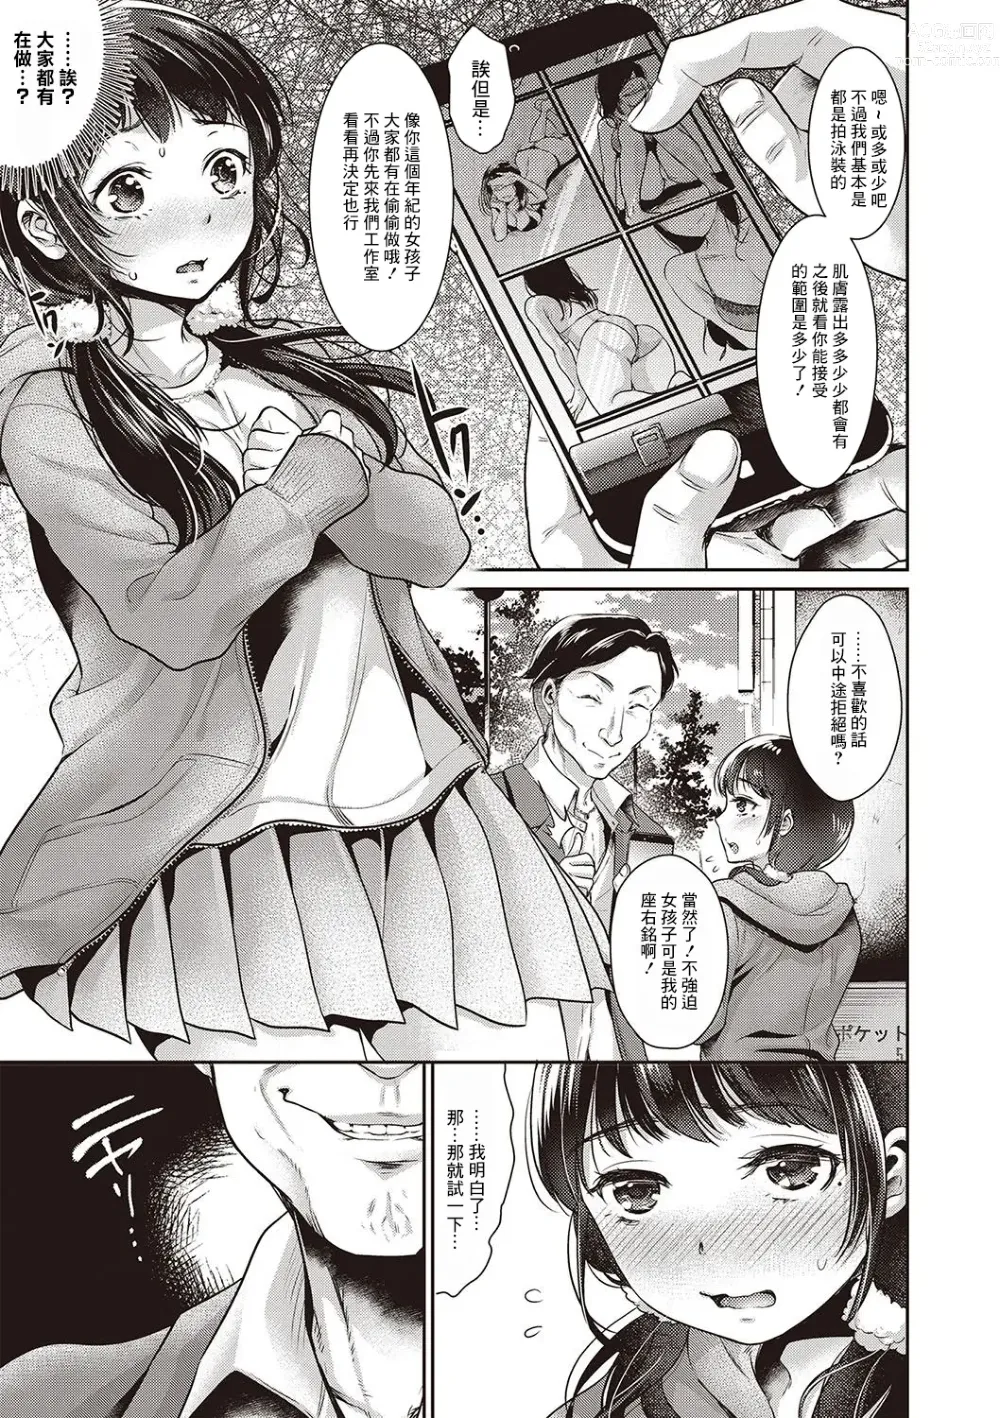 Page 5 of manga Oboreru Mesu JK!